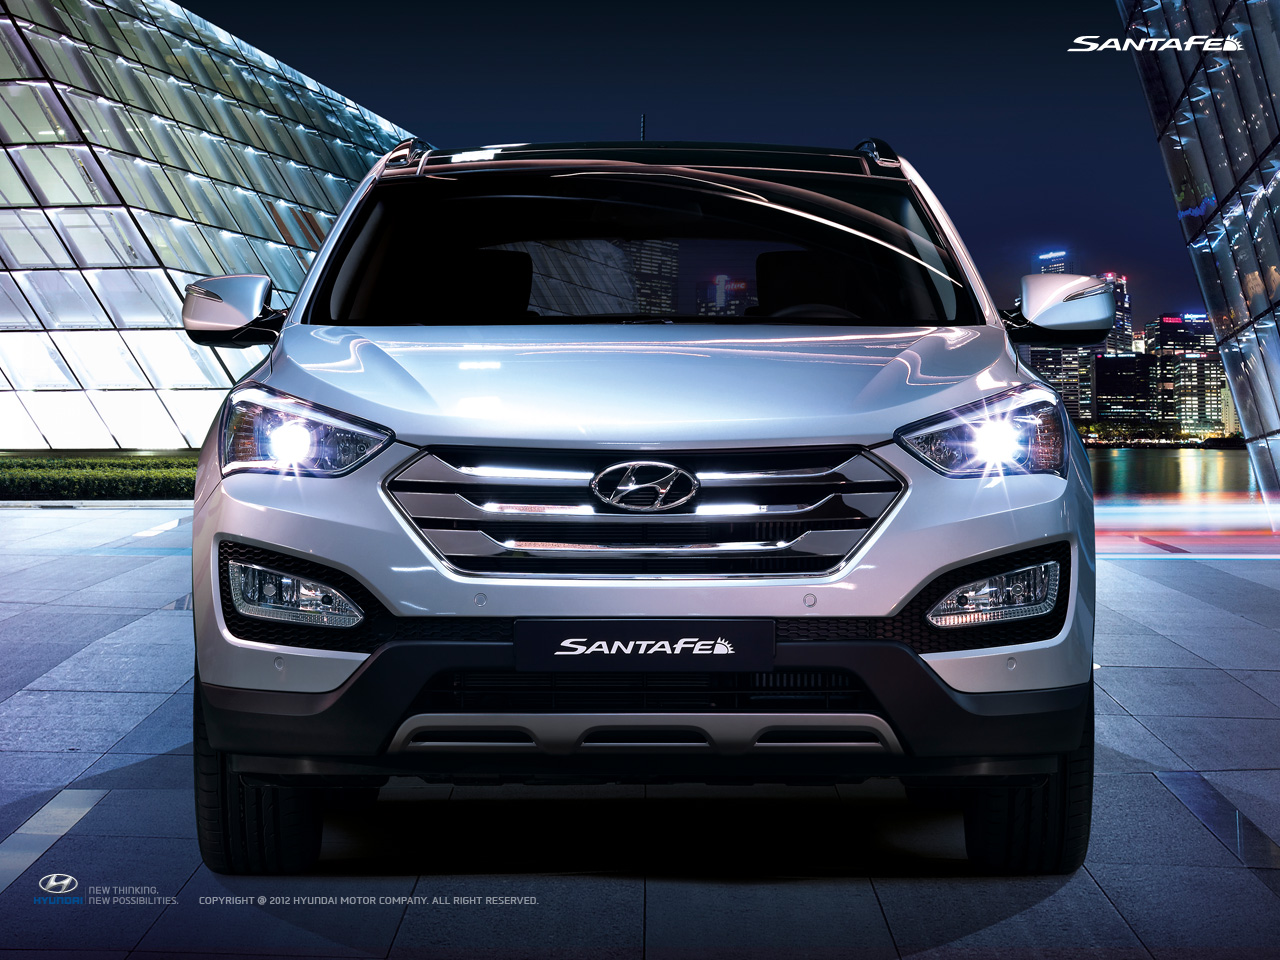 АРТЕКС представляет: Новый Hyundai Santa Fe - мощь и надежность в квадрате!